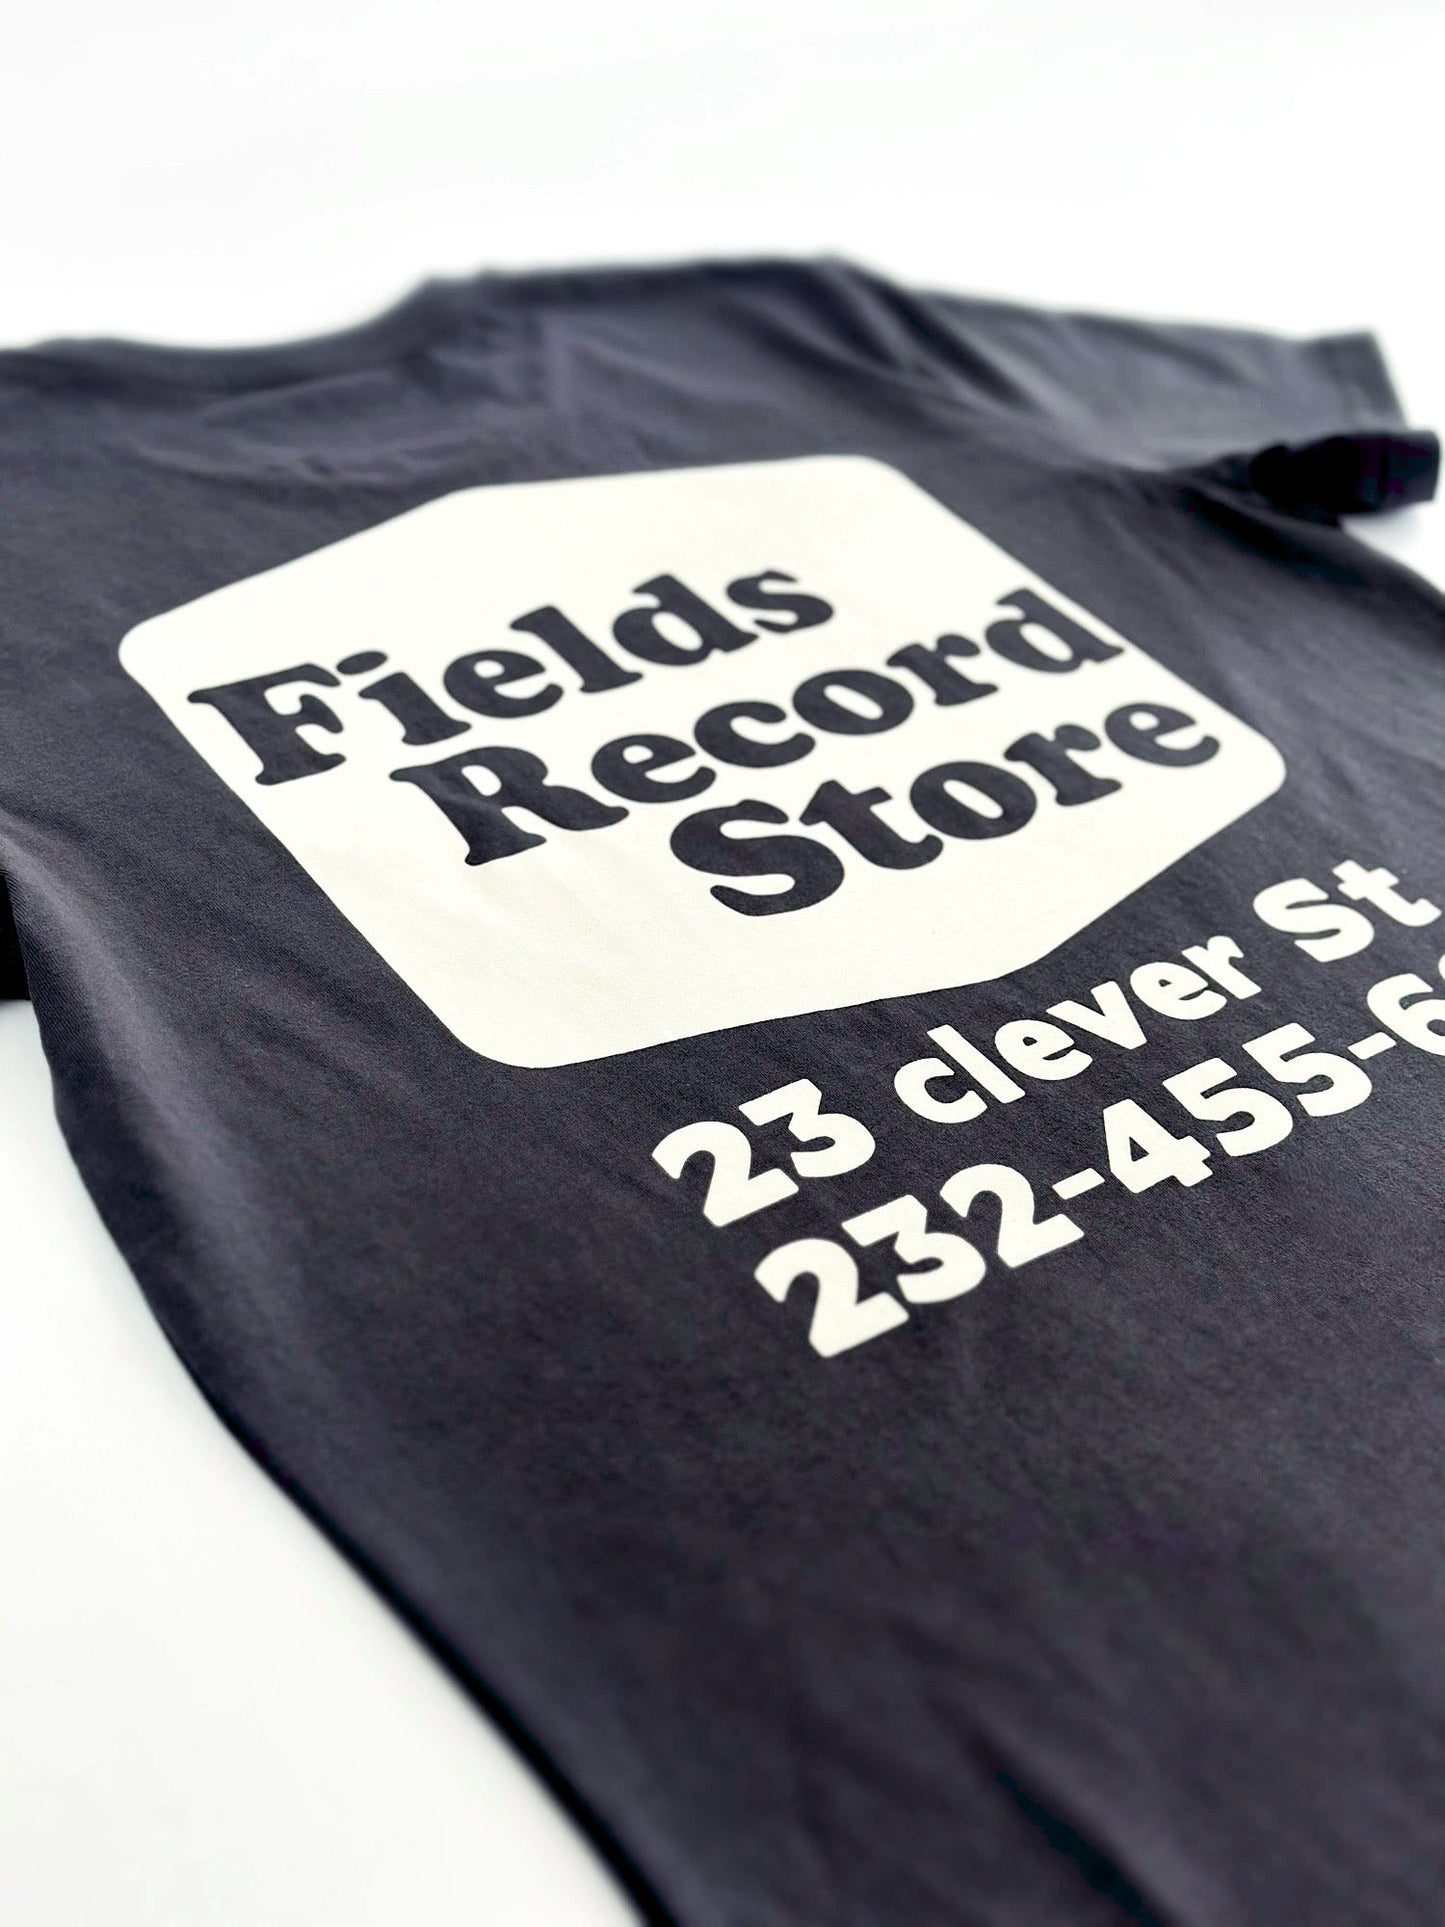 Camiseta 'Tienda de discos'